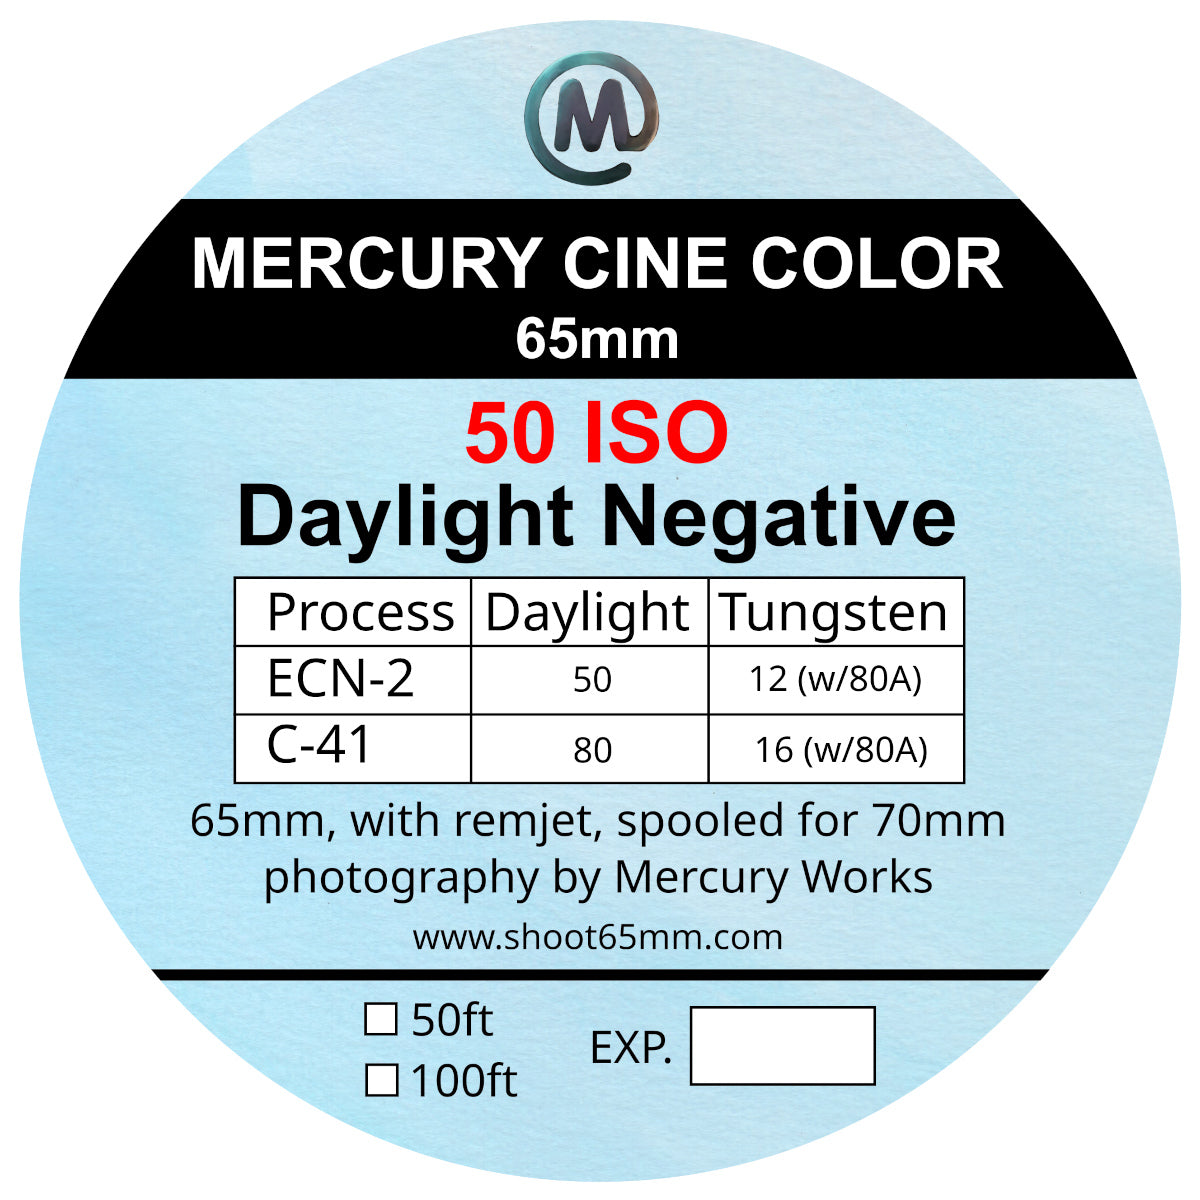 Mercury Cine Color 50 - 65mm film